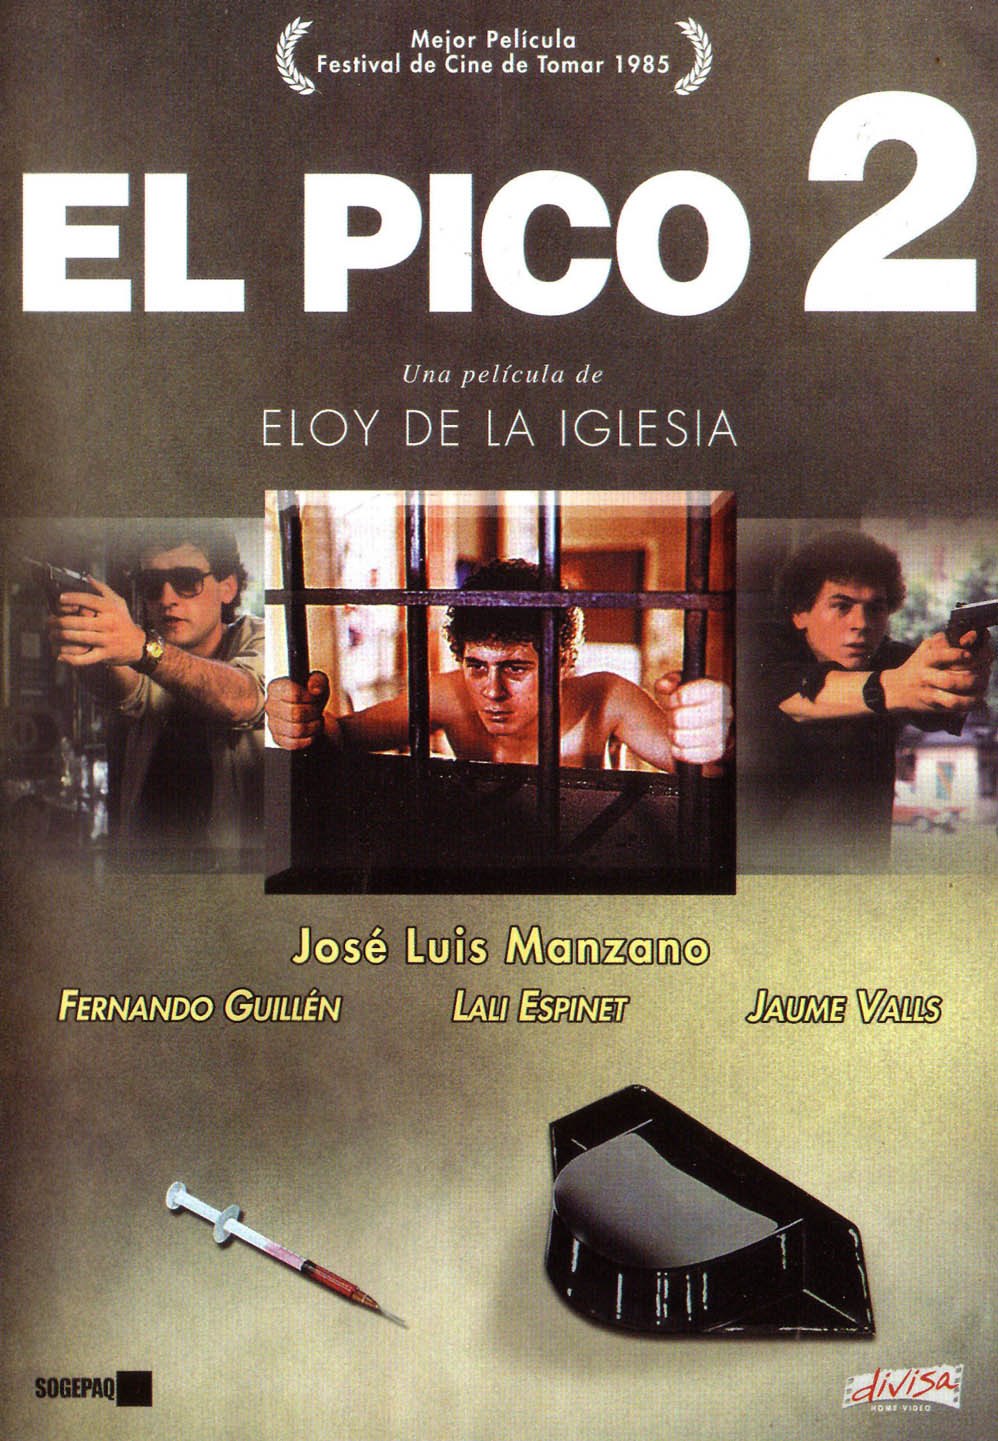 El pico 2 (1984) Screenshot 2 